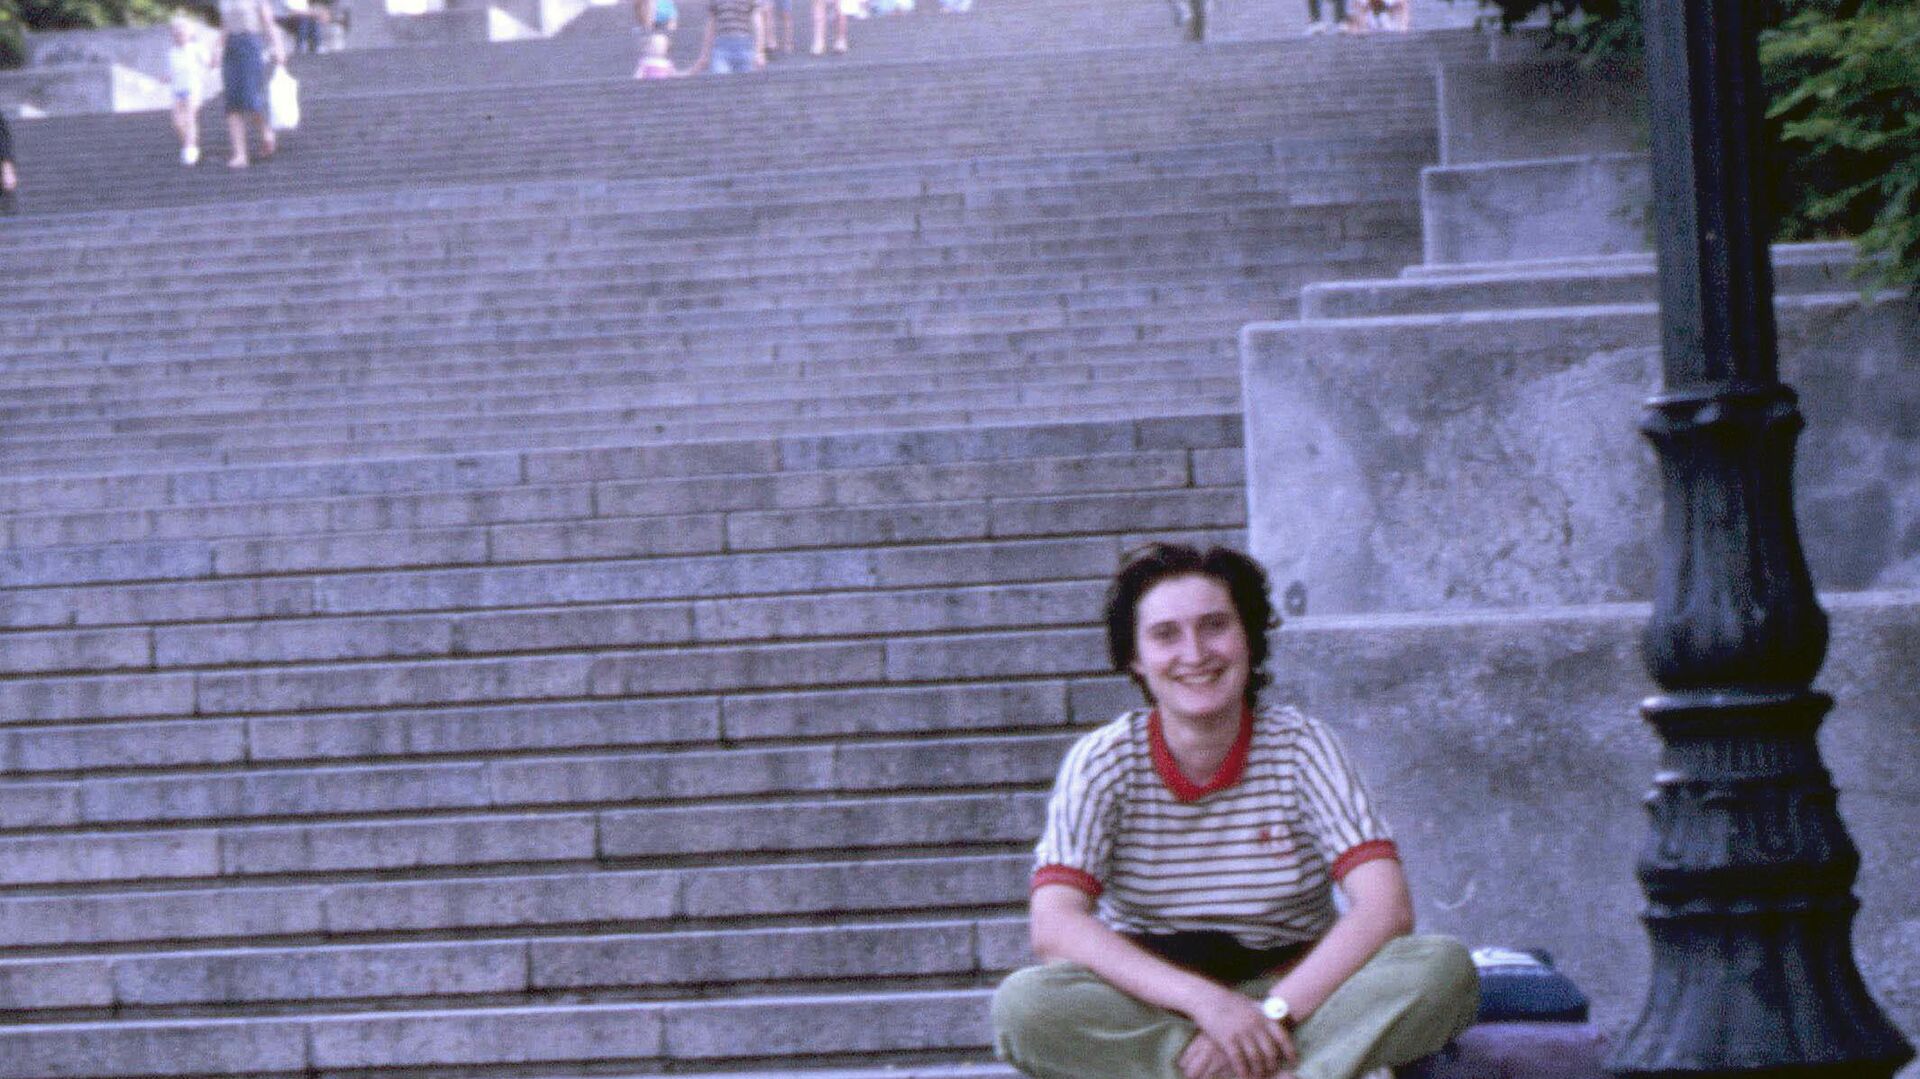 Sara Gutiérrez en las escaleras en las que se filmó 'El acorazado Potemkin' en Odesa (Ucrania) - Sputnik Mundo, 1920, 08.08.2021